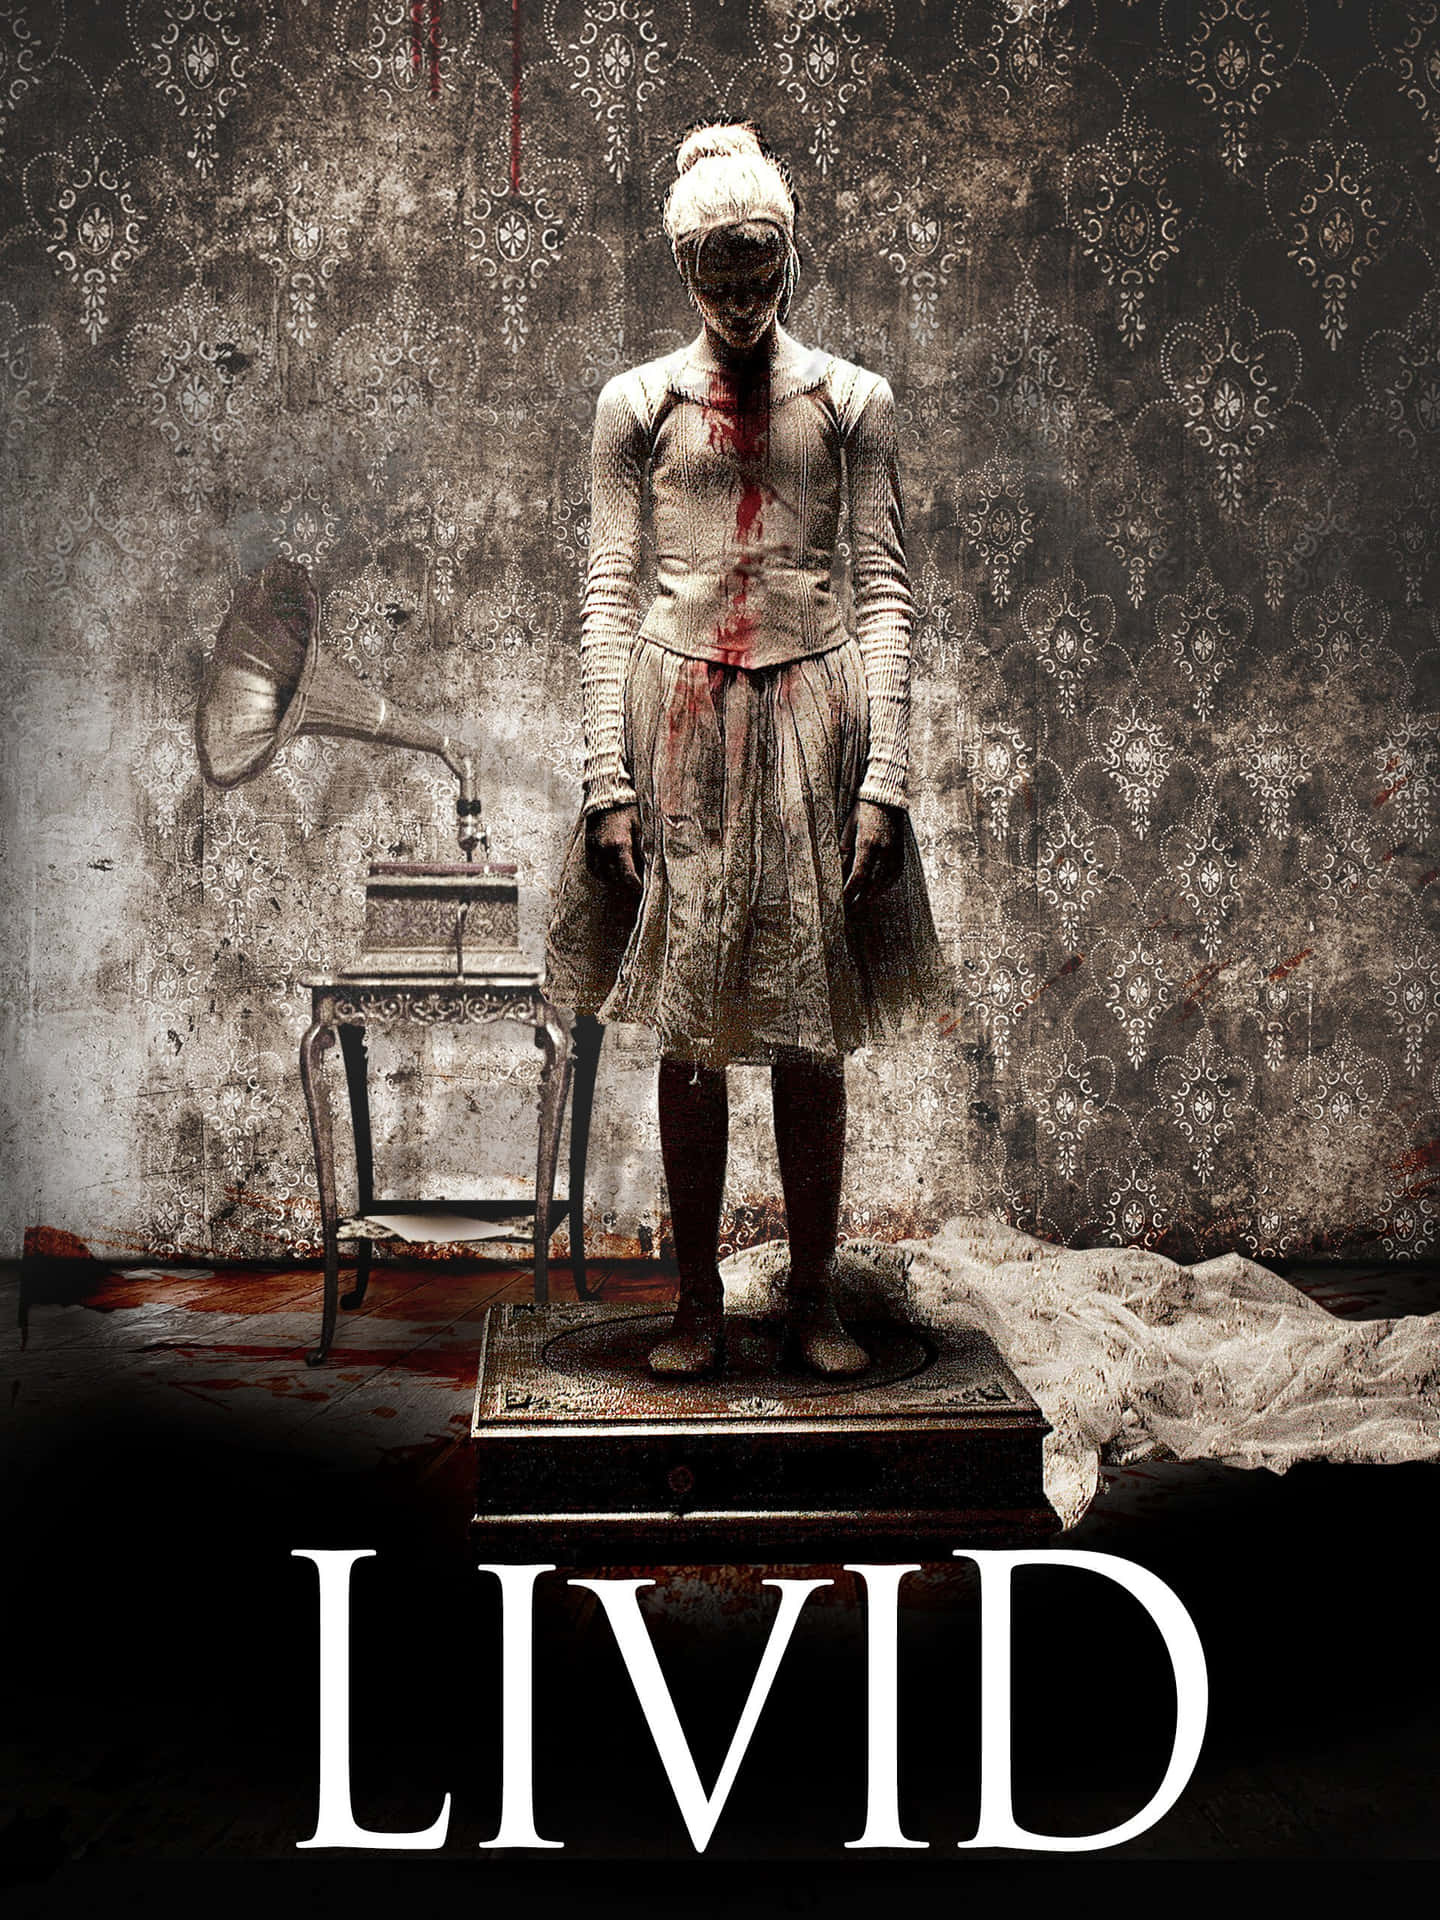 Livid Horror Movie Poster Wallpaper